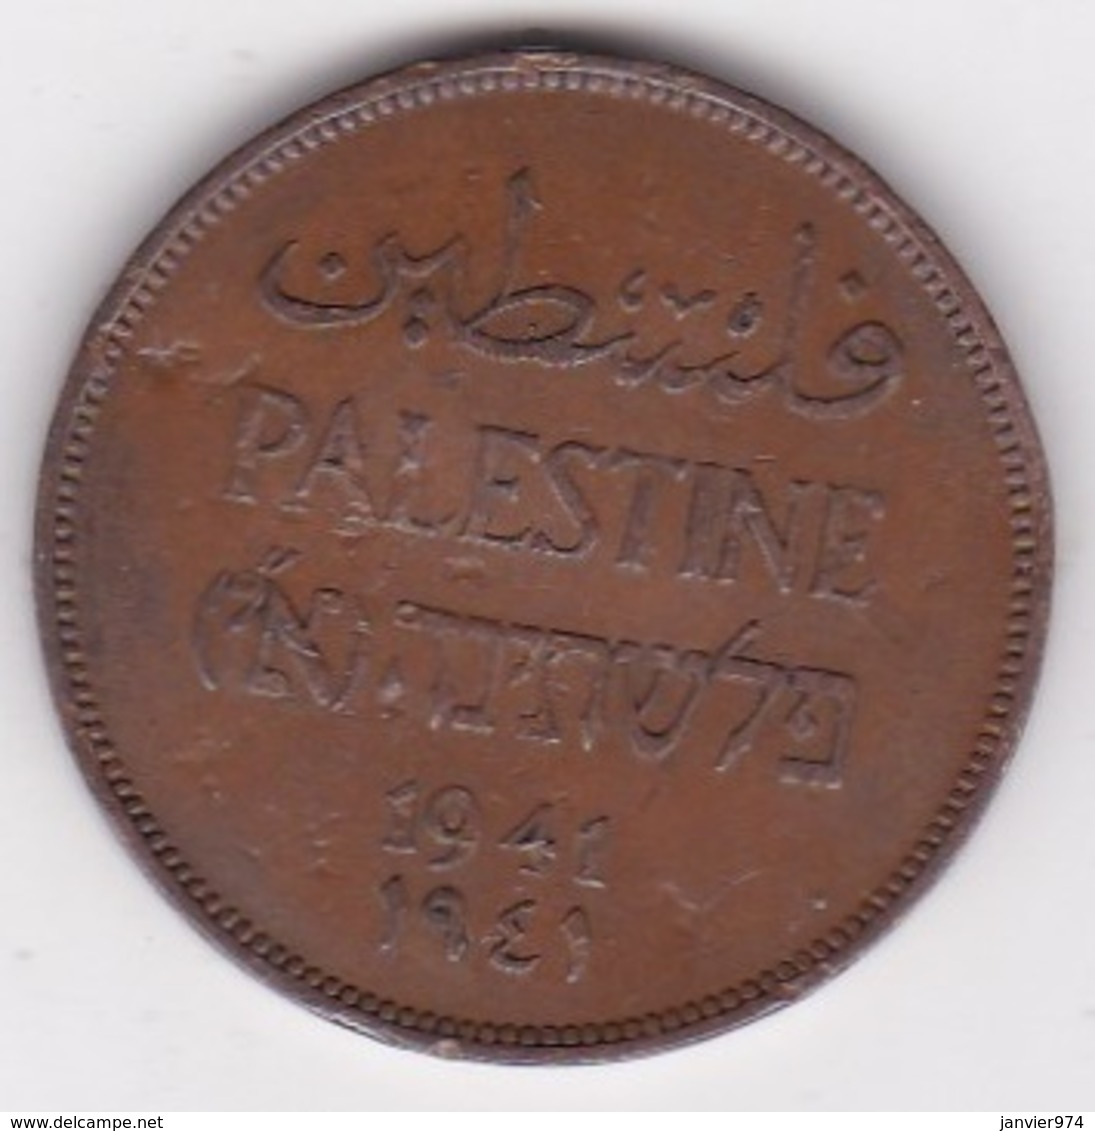 PALESTINE . 2 MILS 1941 .BRONZE - Israel